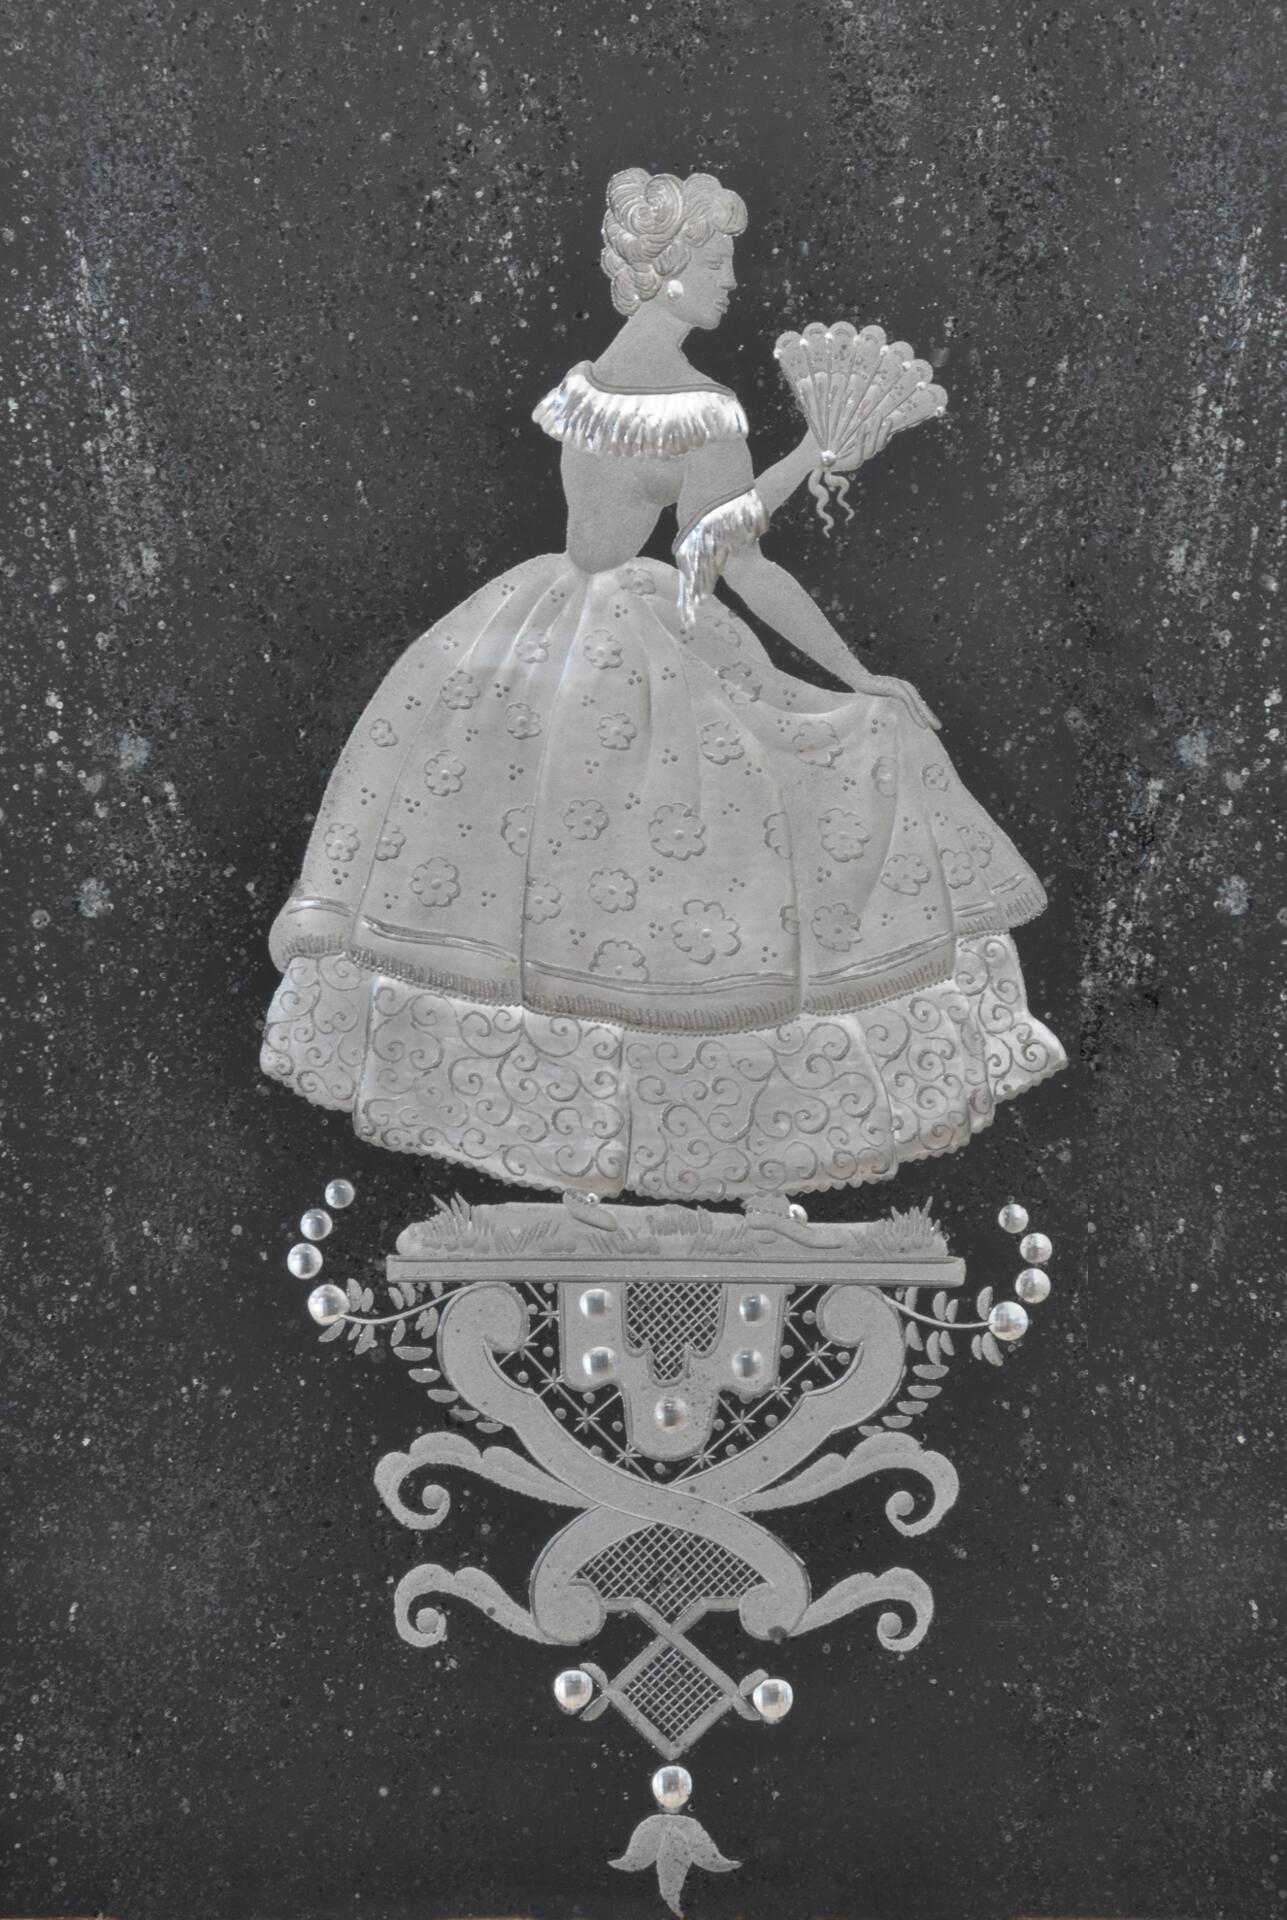 lavorazione artistica fatta a mano degli specchi incisi a mano su lastra di argento raffigurante nobili veneziani del 1700 delle ante del trumeau, realizzate dai maestri vetrai incisori di Murano